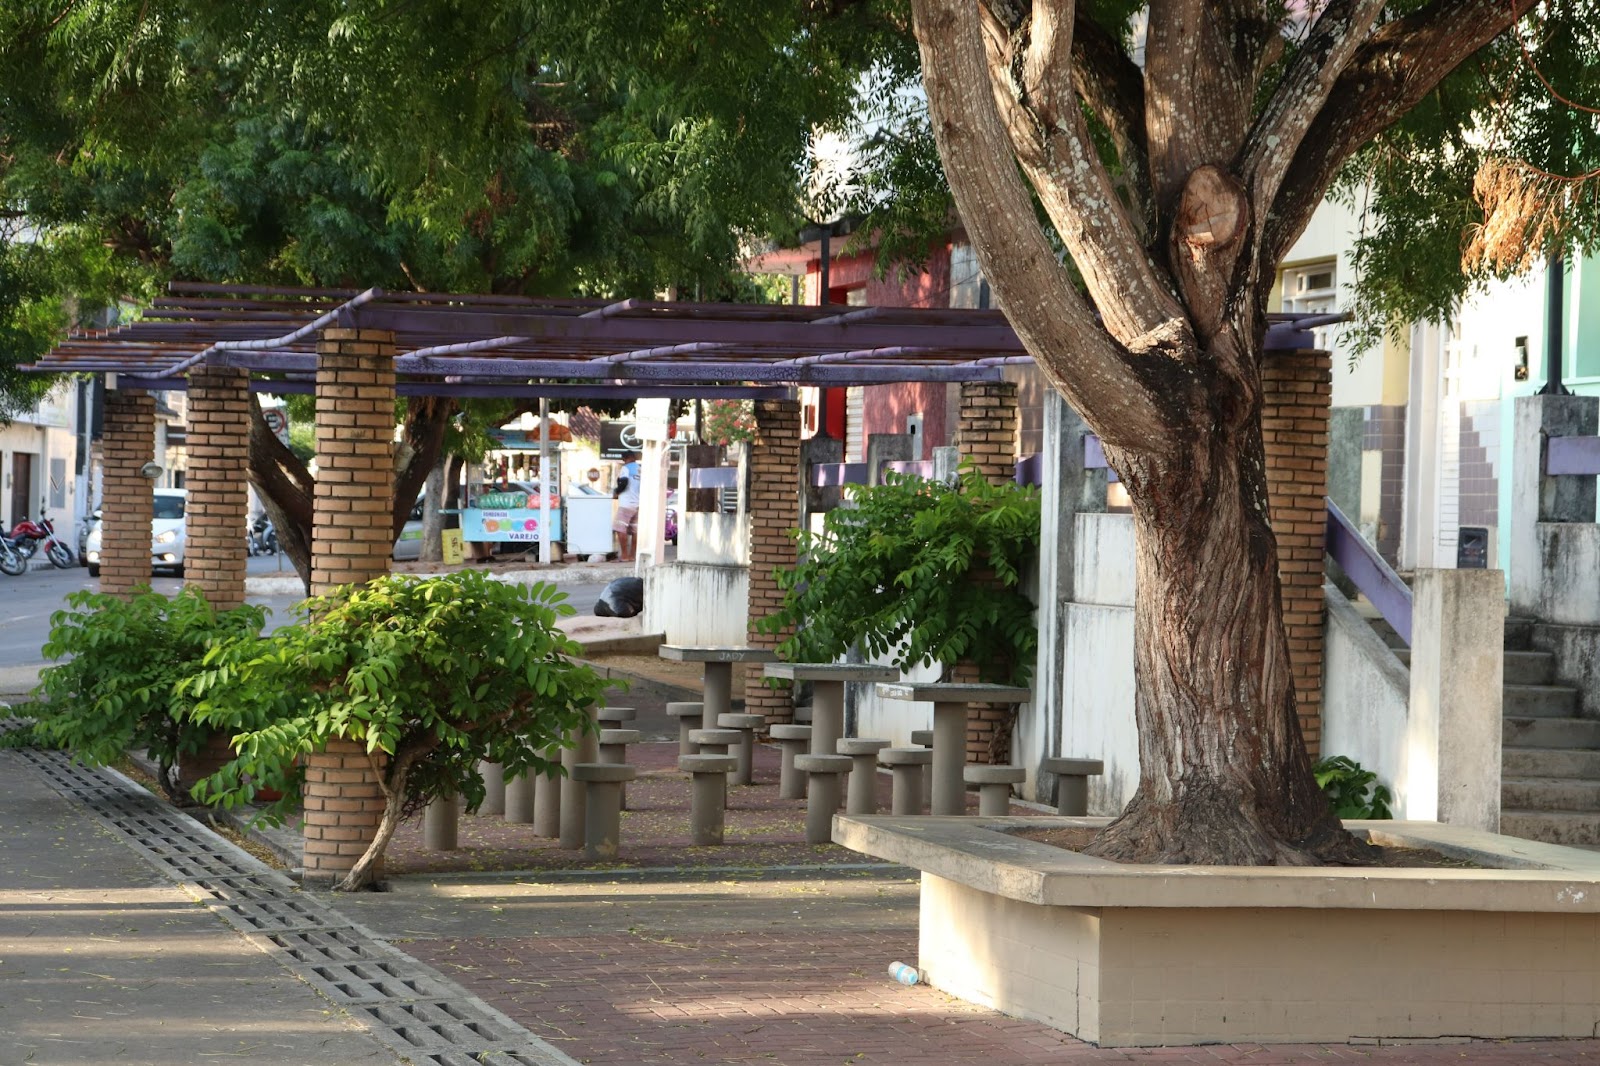 Foto de uma das praças da cidade de Arapiraca. Diversas mesas e bancos de concreto embaixo de uma estrutura para proteger do sol